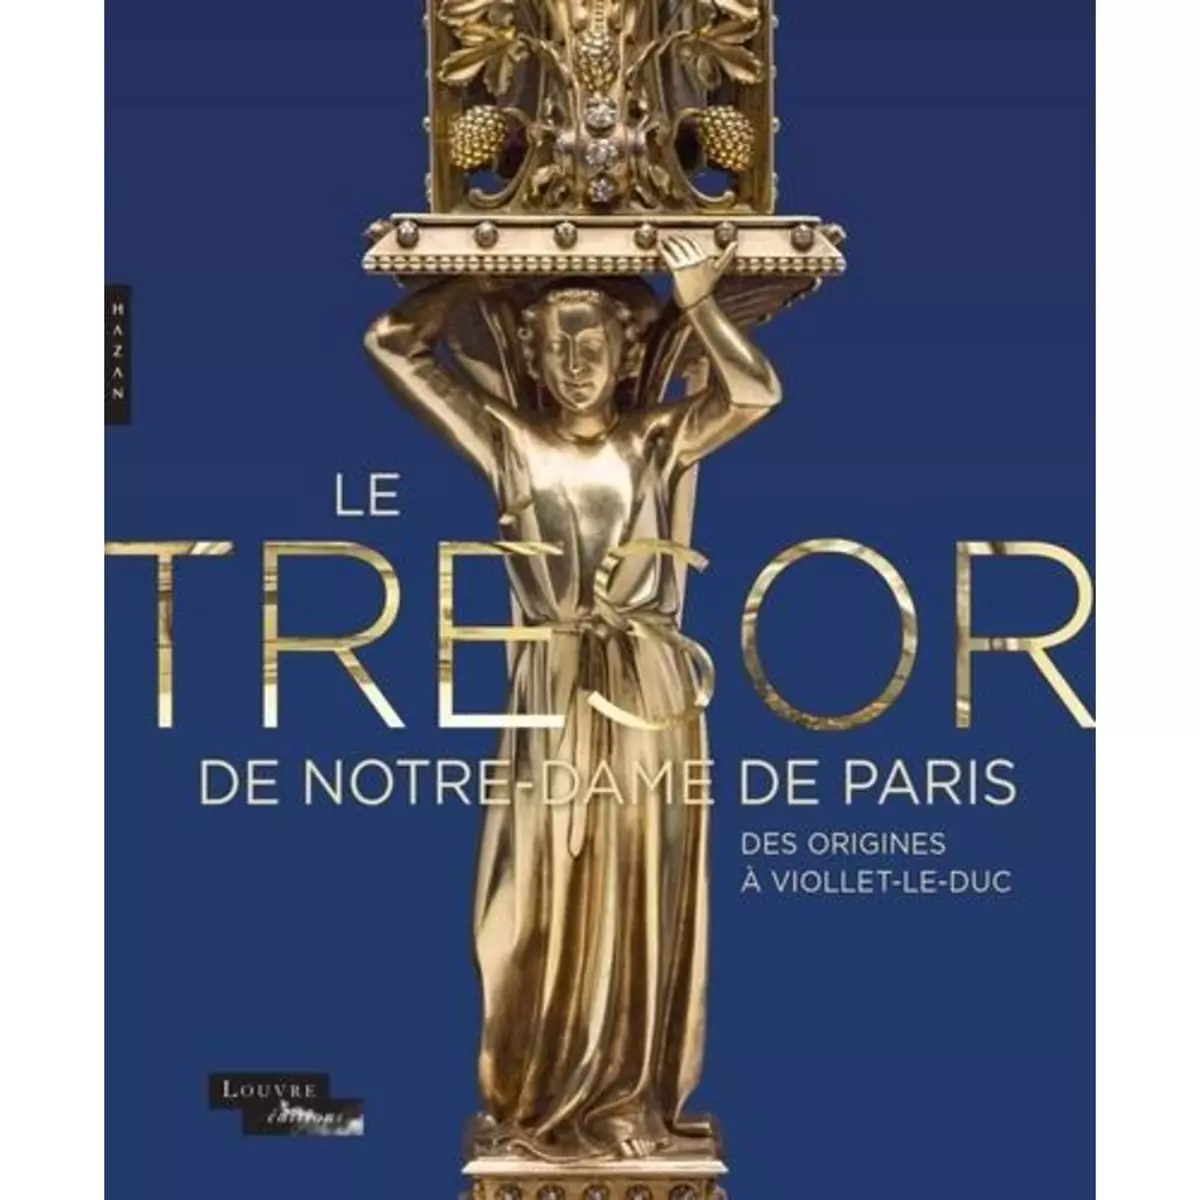  LE TRESOR DE NOTRE-DAME DE PARIS. DES ORIGINES A VIOLLET-LE-DUC, Durand Jannic